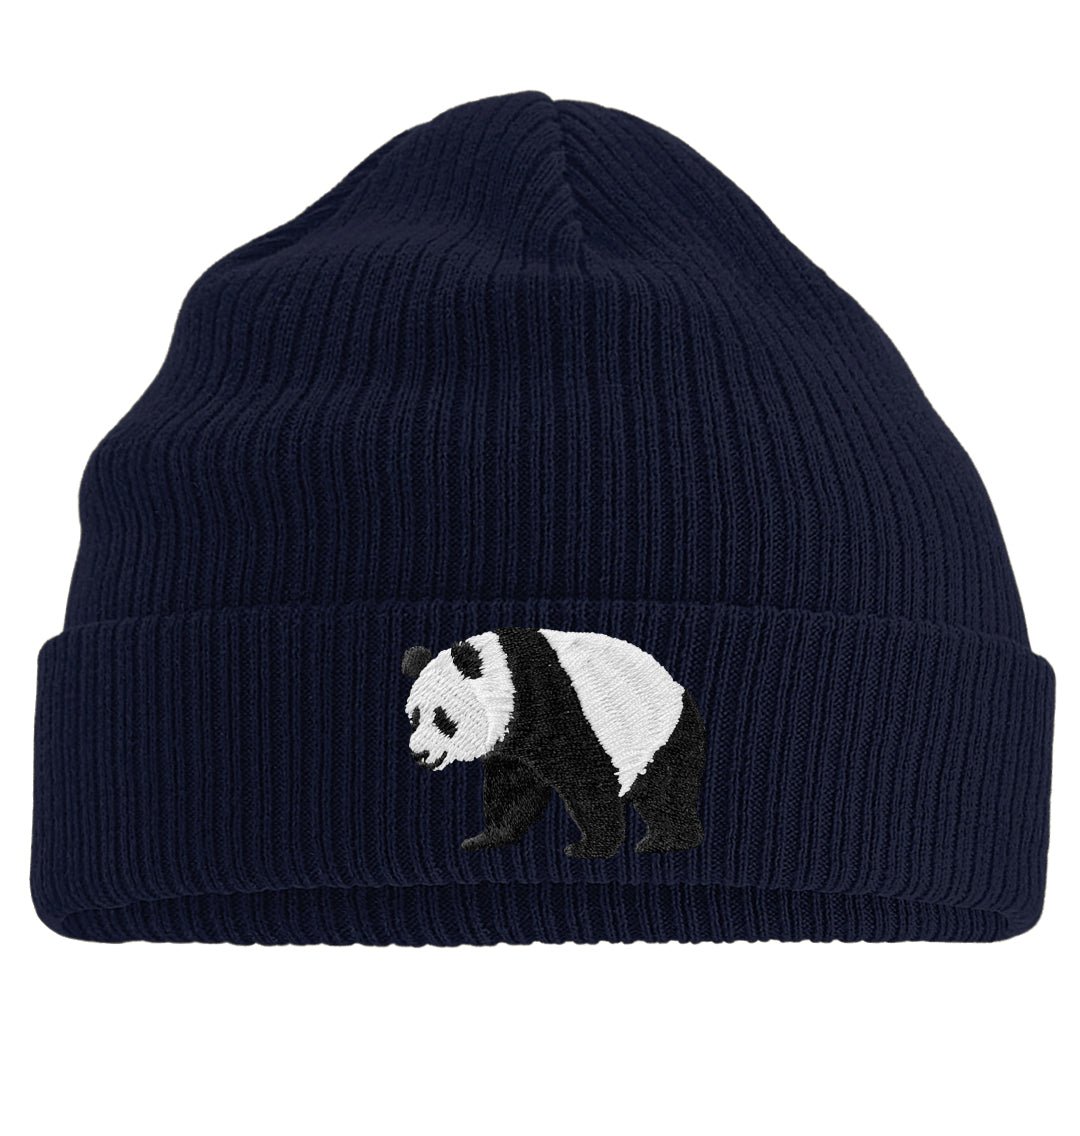 Panda Beanie - Blue Panda